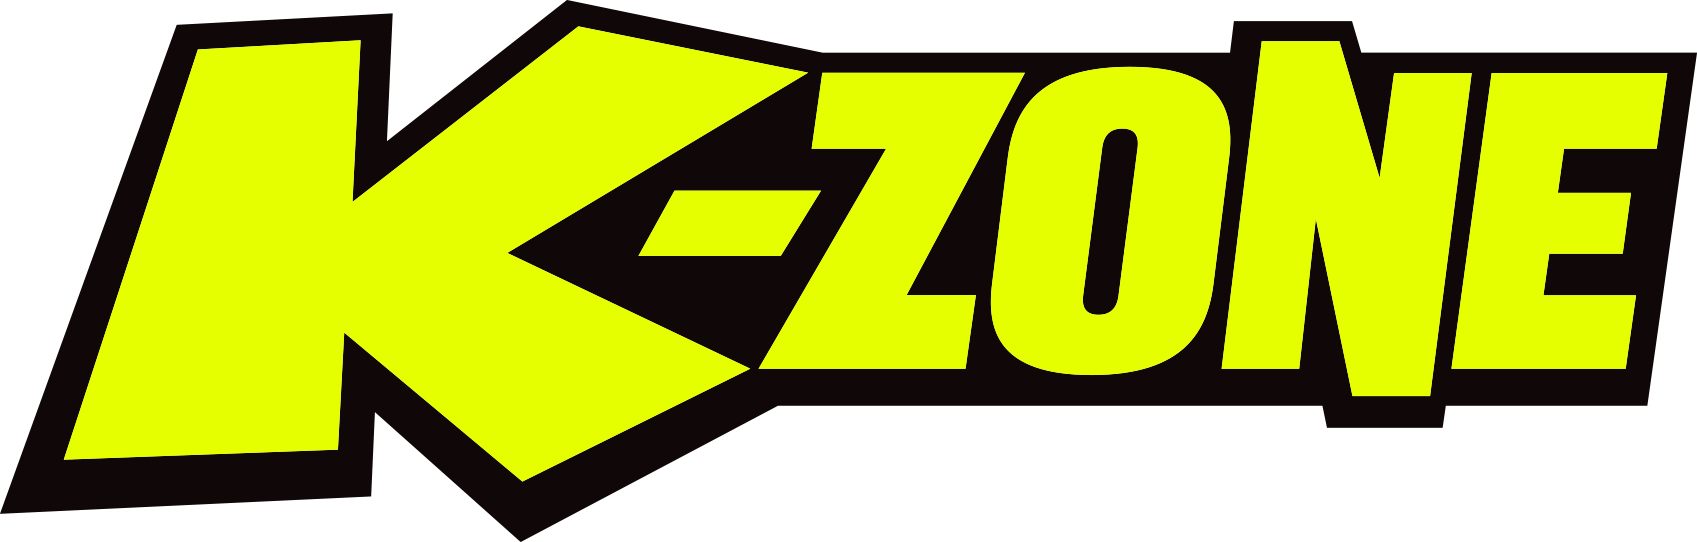 K-zone Logo - K Zone Png (1697x542)